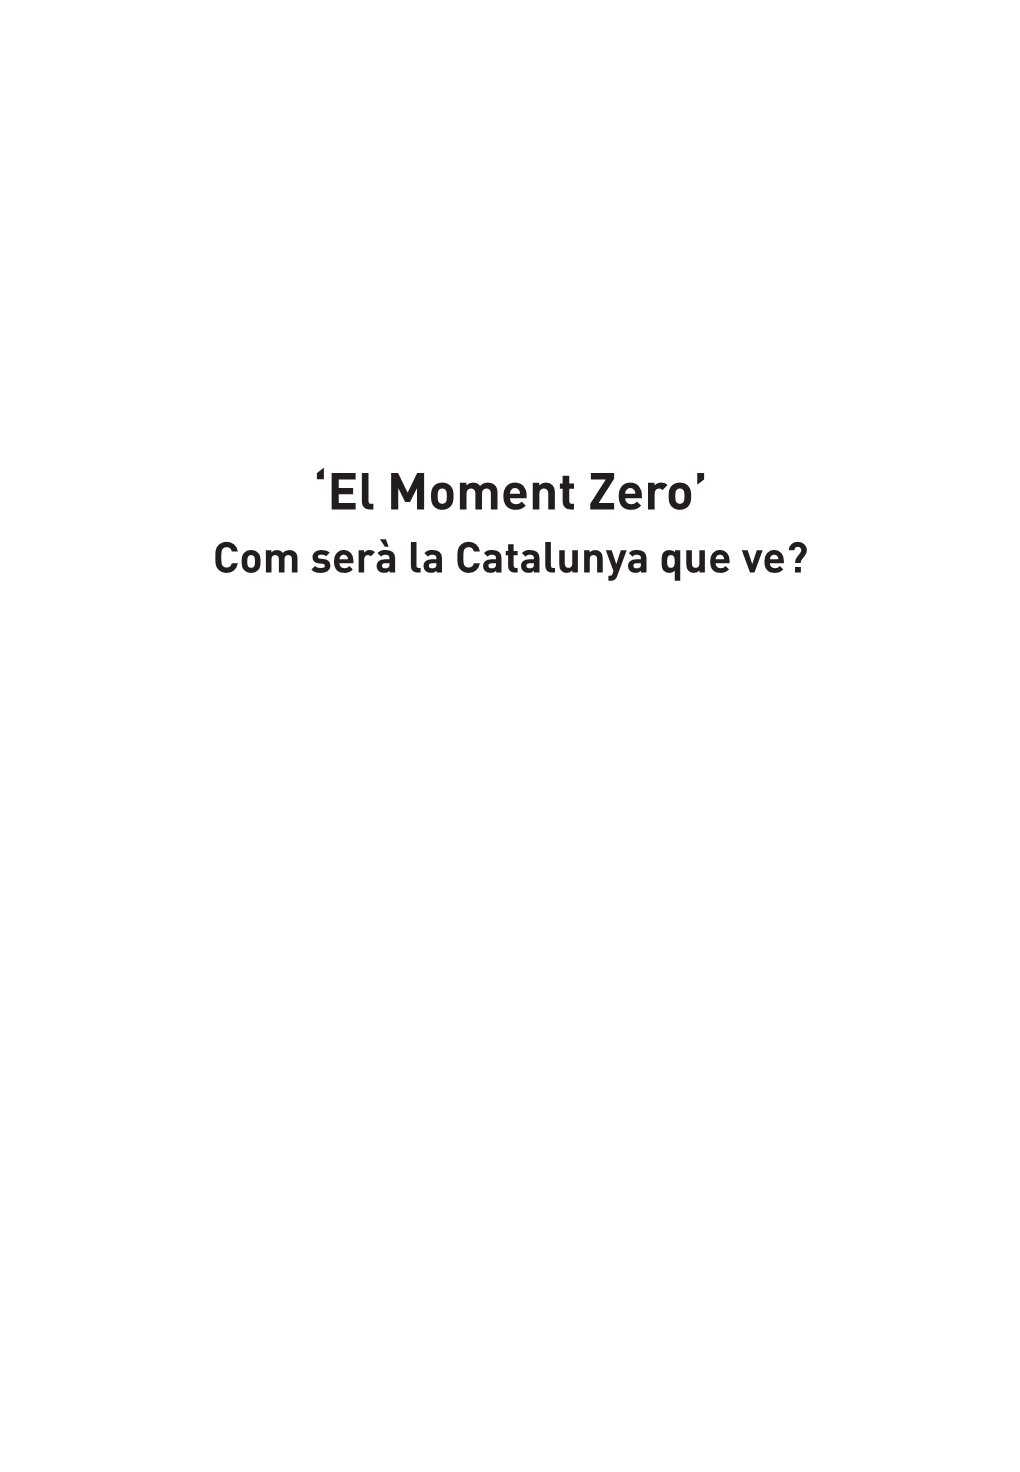 Moment Zero’ Com Serà La Catalunya Que Ve? ‘El Moment Zero’ Com Serà La Catalunya Que Ve?